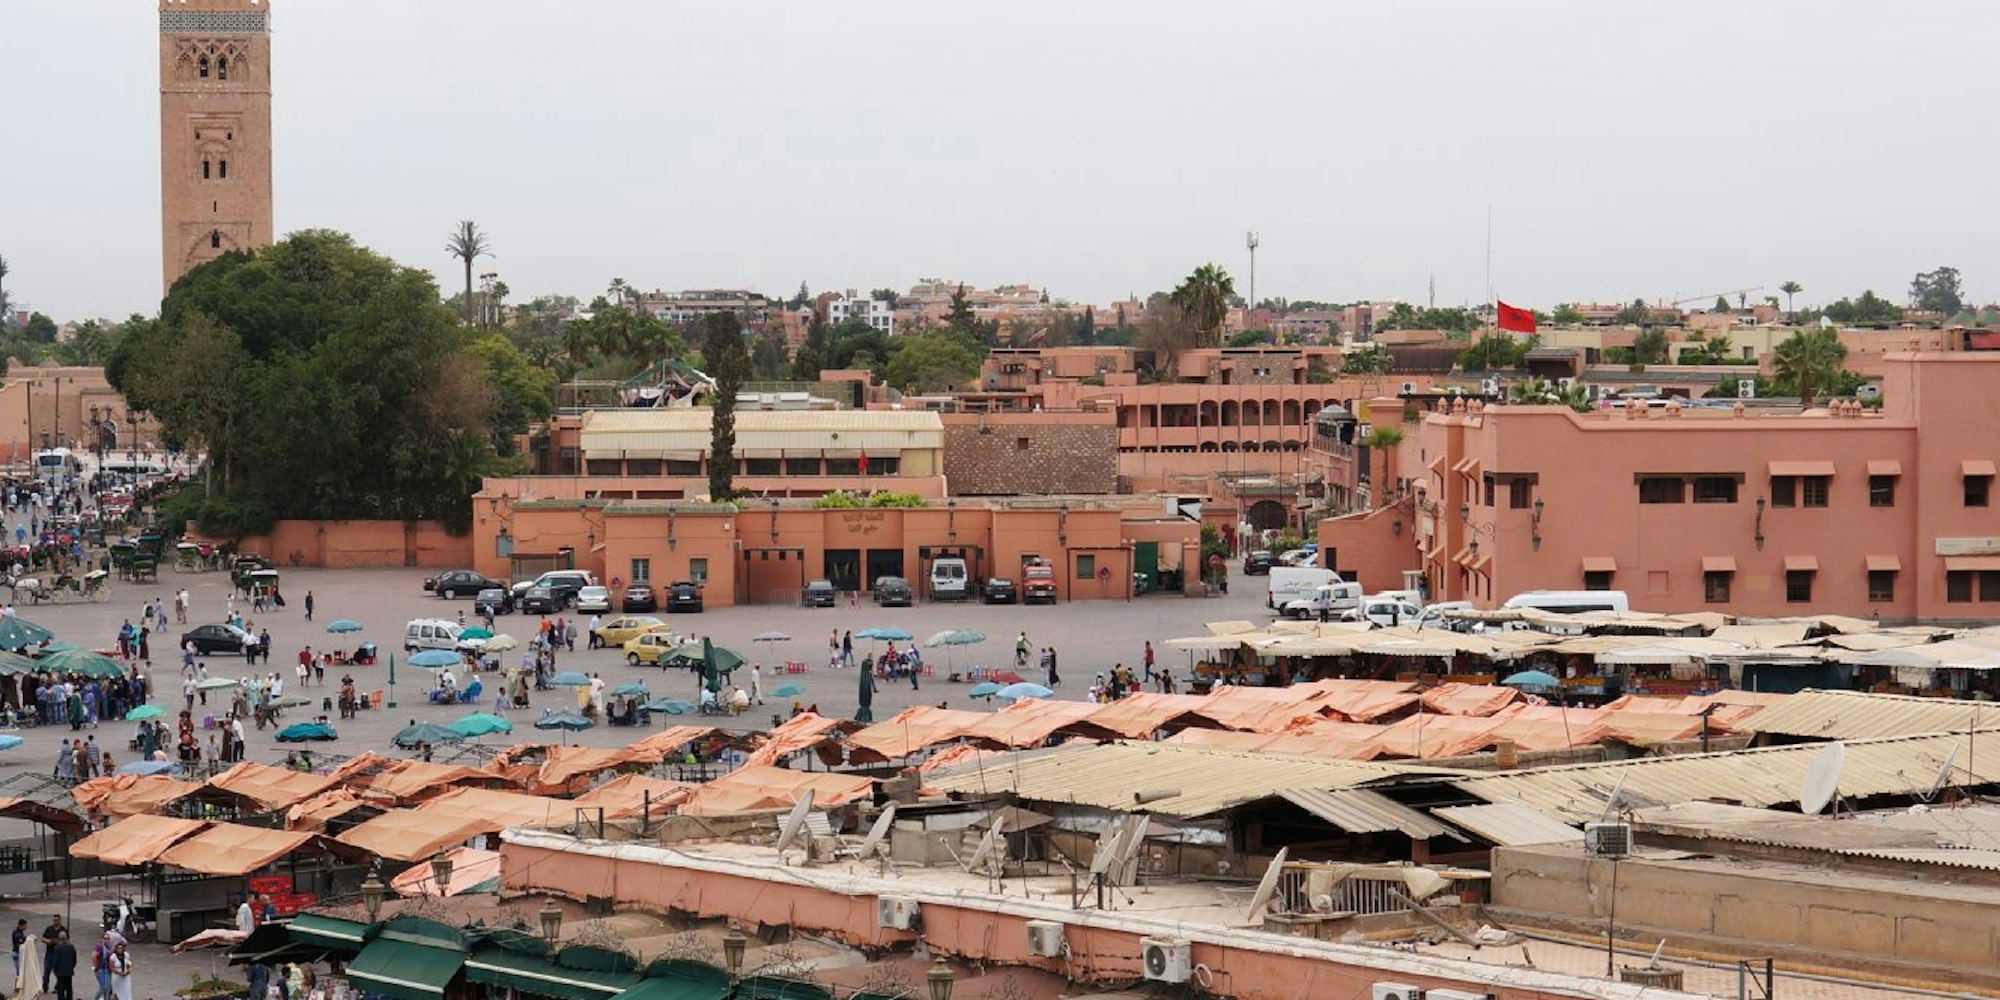 Marrakesch ist als Reiseziel beliebt - und Marokko ein weitgehend sicheres Reiseland.